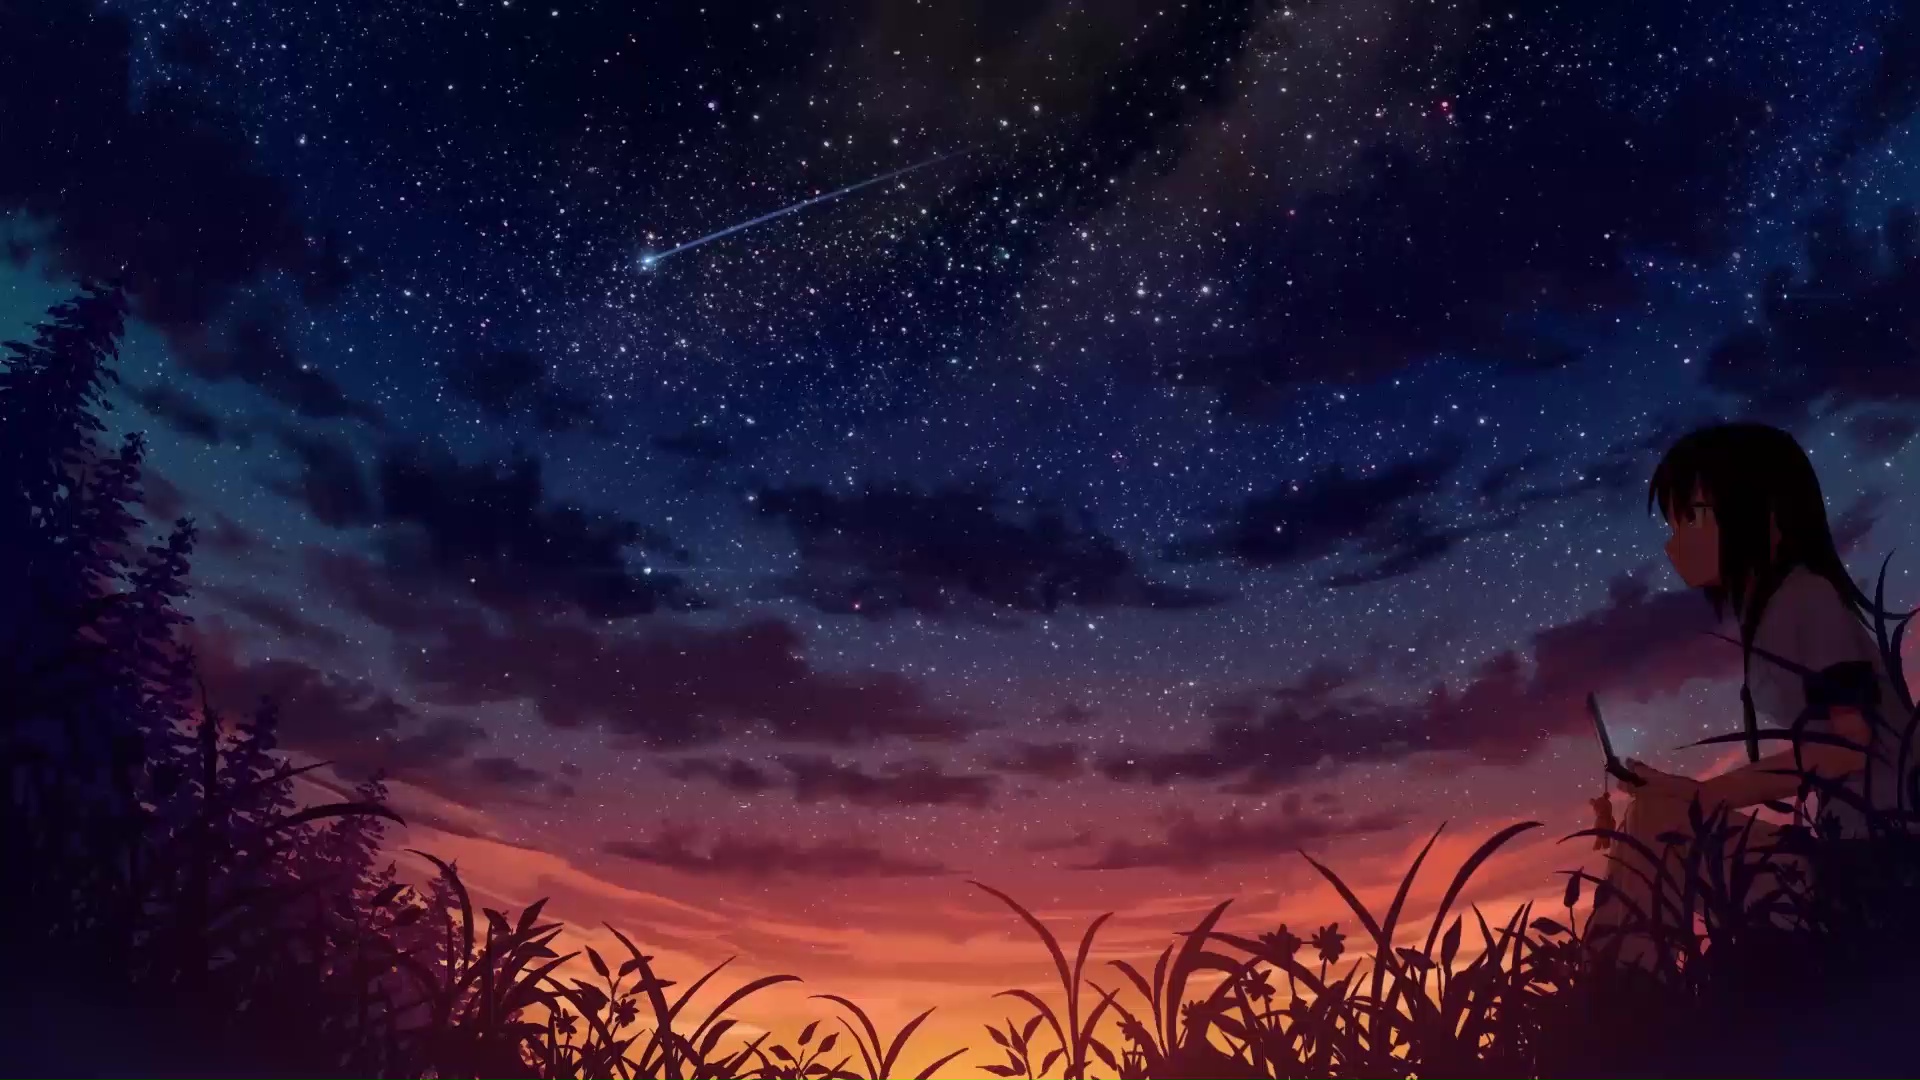 Starry Night Sky: Với hàng triệu ngôi sao lấp lánh, bầu trời đêm luôn gợi lên cảm giác thần tiên và bình yên. Hãy tha hồ chiêm ngưỡng những hình ảnh lung linh của bầu trời đêm, để tâm hồn được thư giãn và thăng hoa.